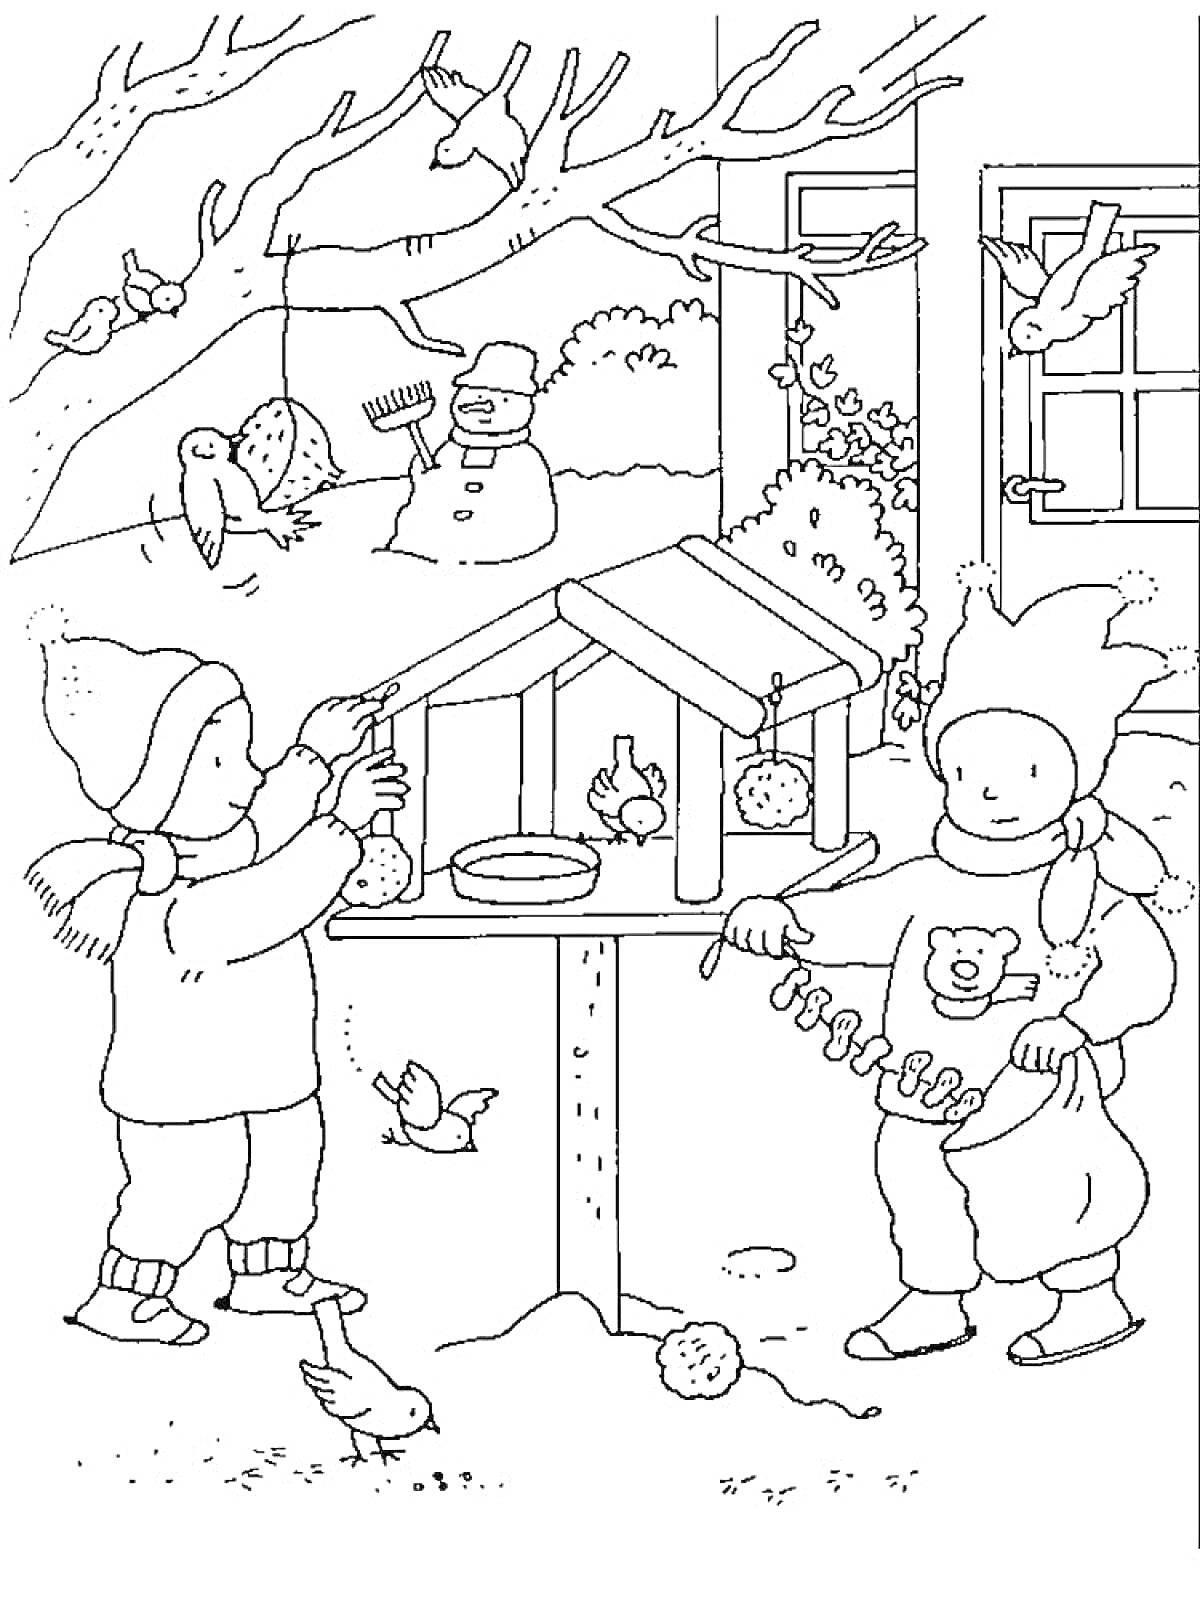 Раскраска дети возле кормушки для птиц, кормление птиц зимой, птицы и снежная фигура из снега